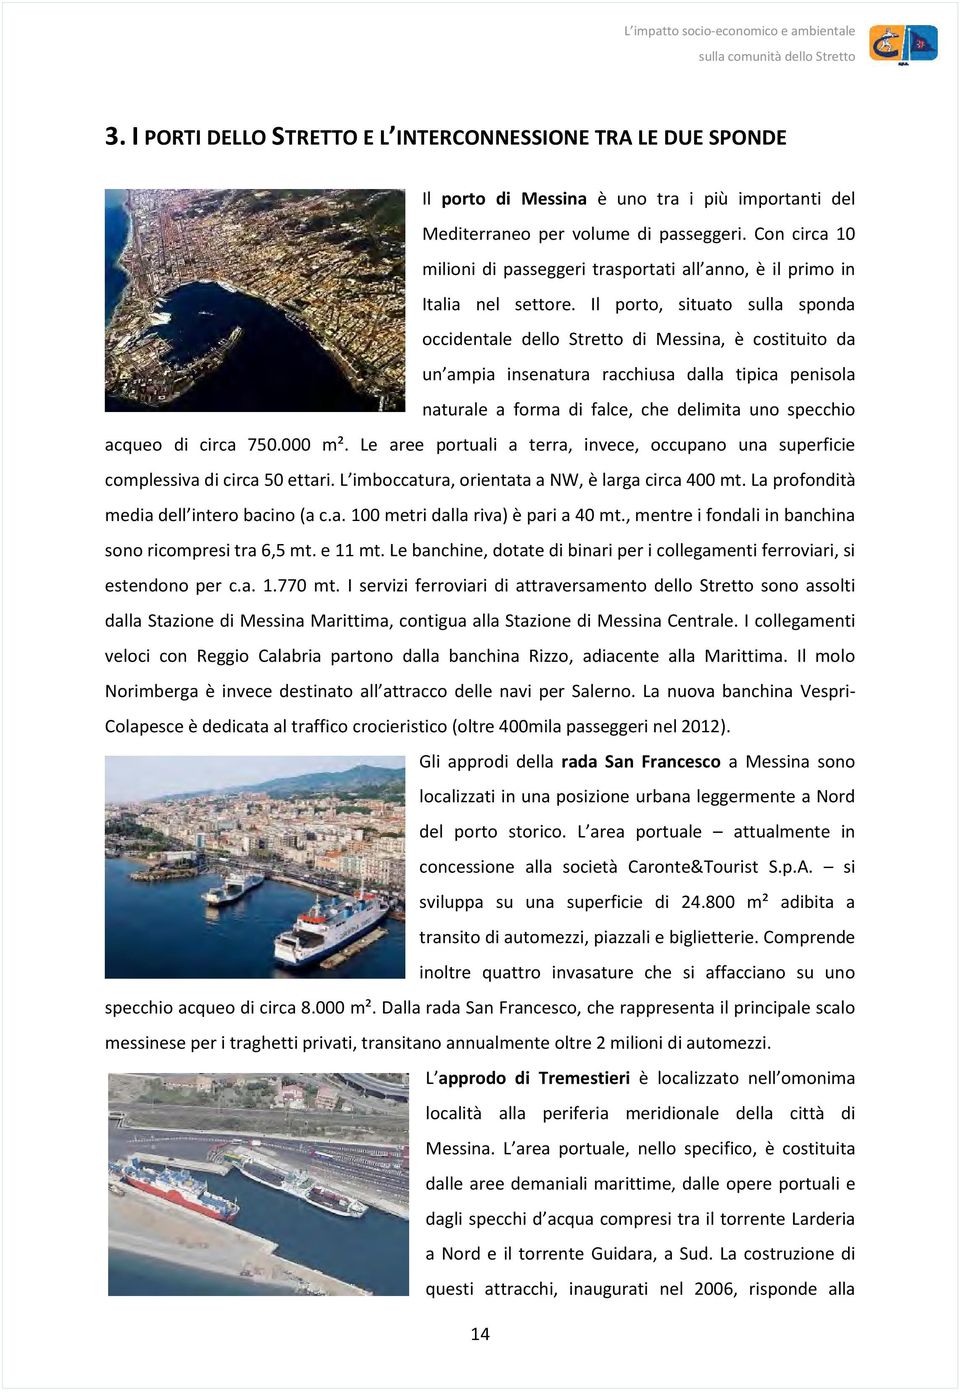 Il porto, situato sulla sponda occidentale dello Stretto di Messina, è costituito da un ampia insenatura racchiusa dalla tipica penisola naturale a forma di falce, che delimita uno specchio acqueo di